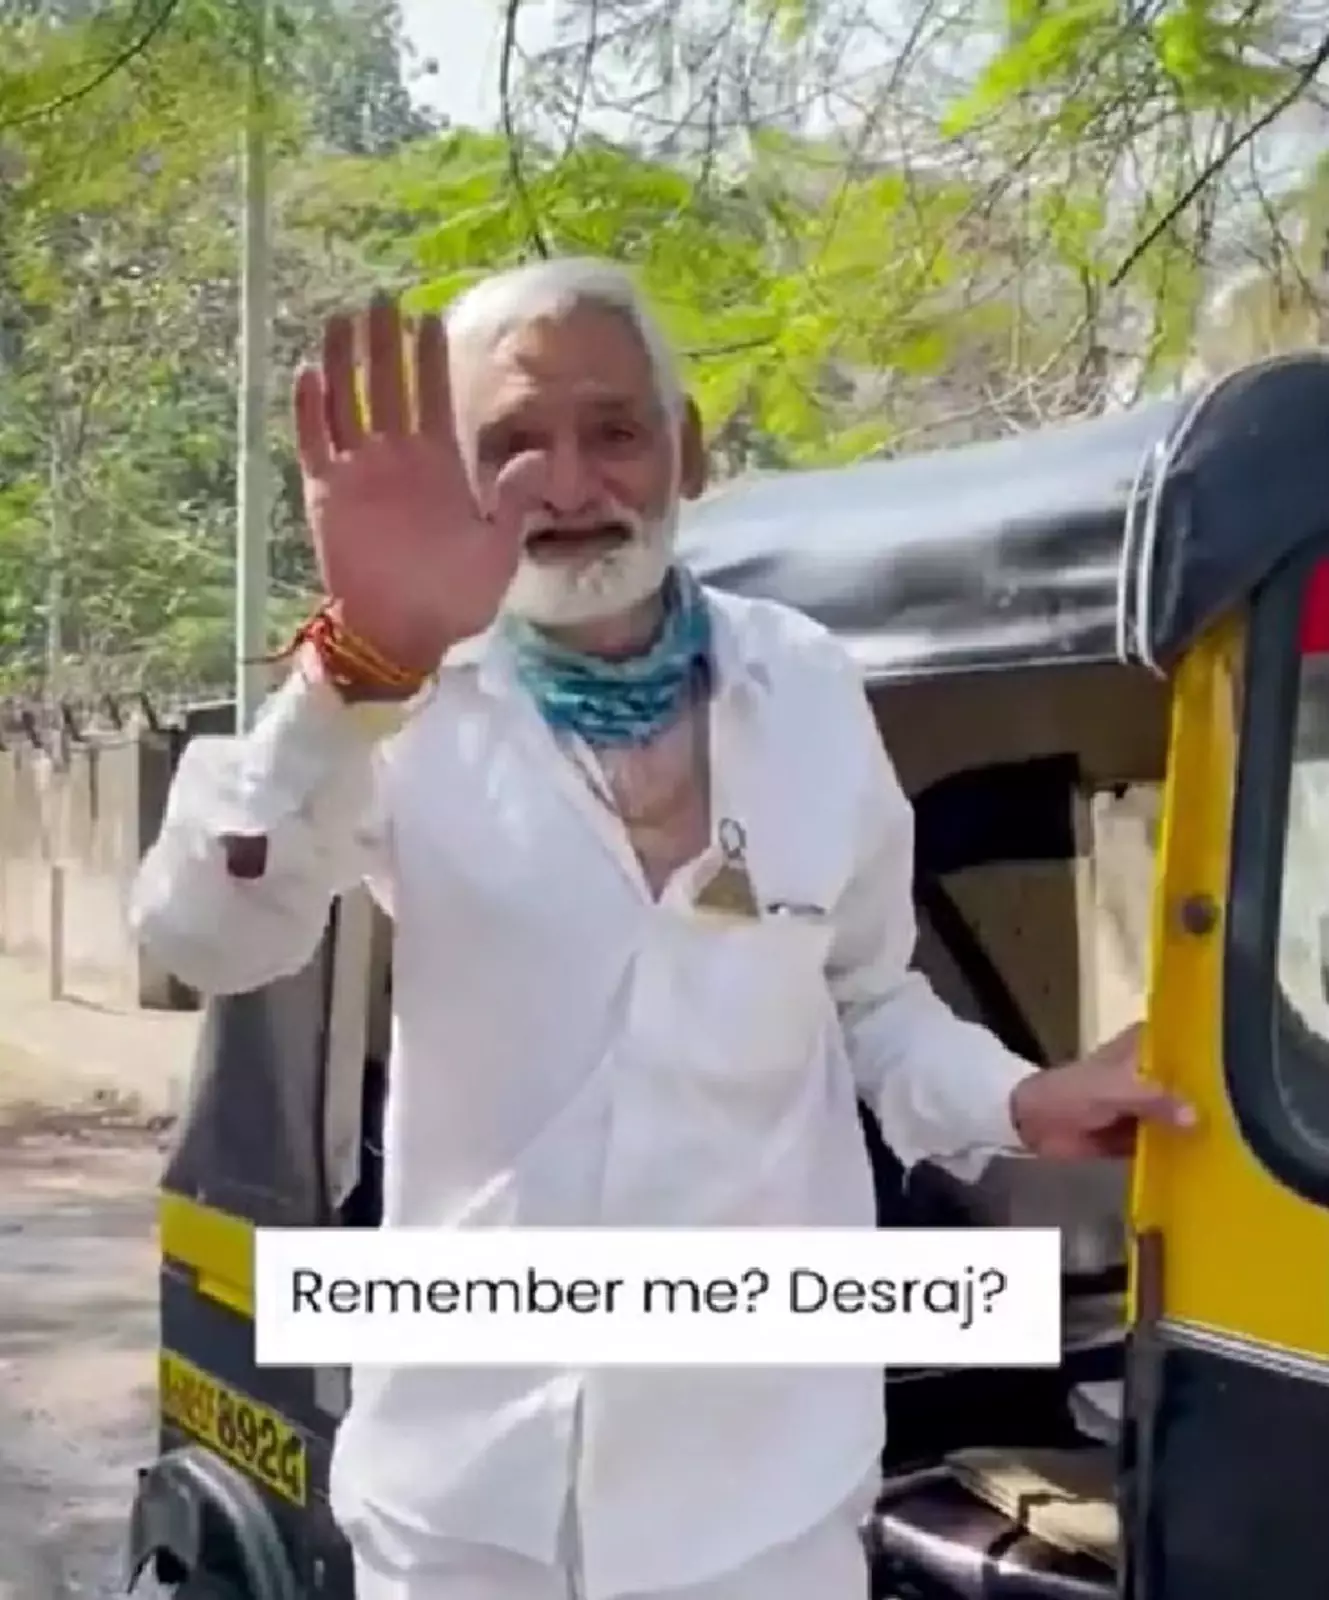 Десрадж Джи работает водителем рикши.